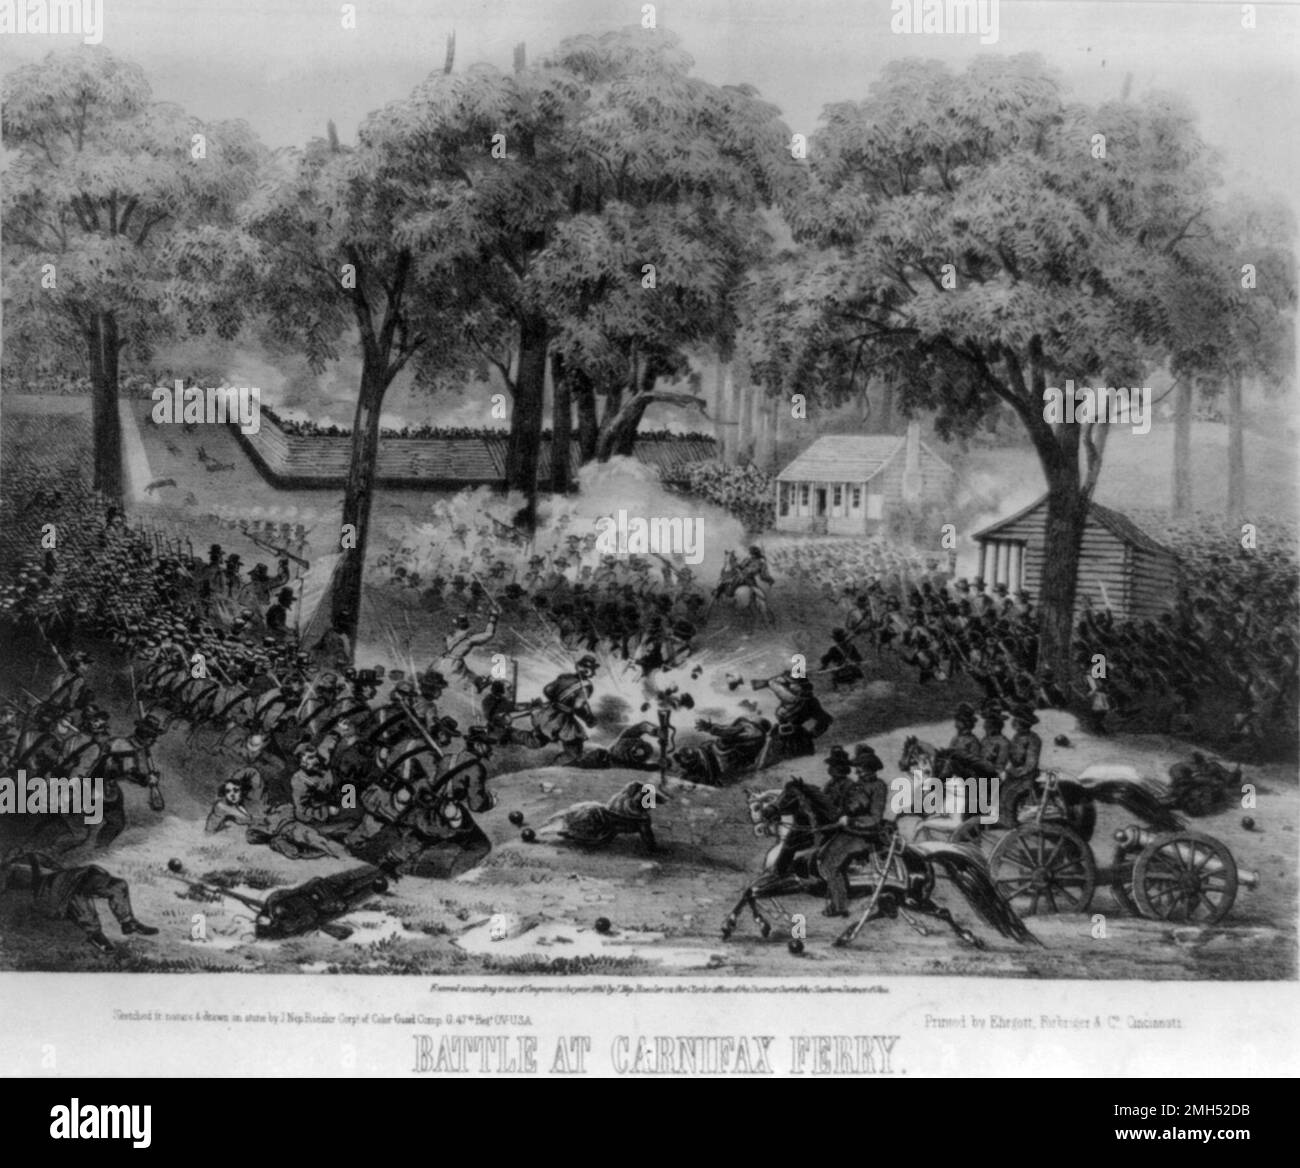 La Batalla de Carnifax Feryy fue una batalla en la Guerra Civil Americana. Tuvo lugar el 10 de septiembre de 1861 en Virginia Occidental. Fue ganado por las fuerzas unionistas, con las fuerzas confederadas retirándose a través del río Gauley. Foto de stock